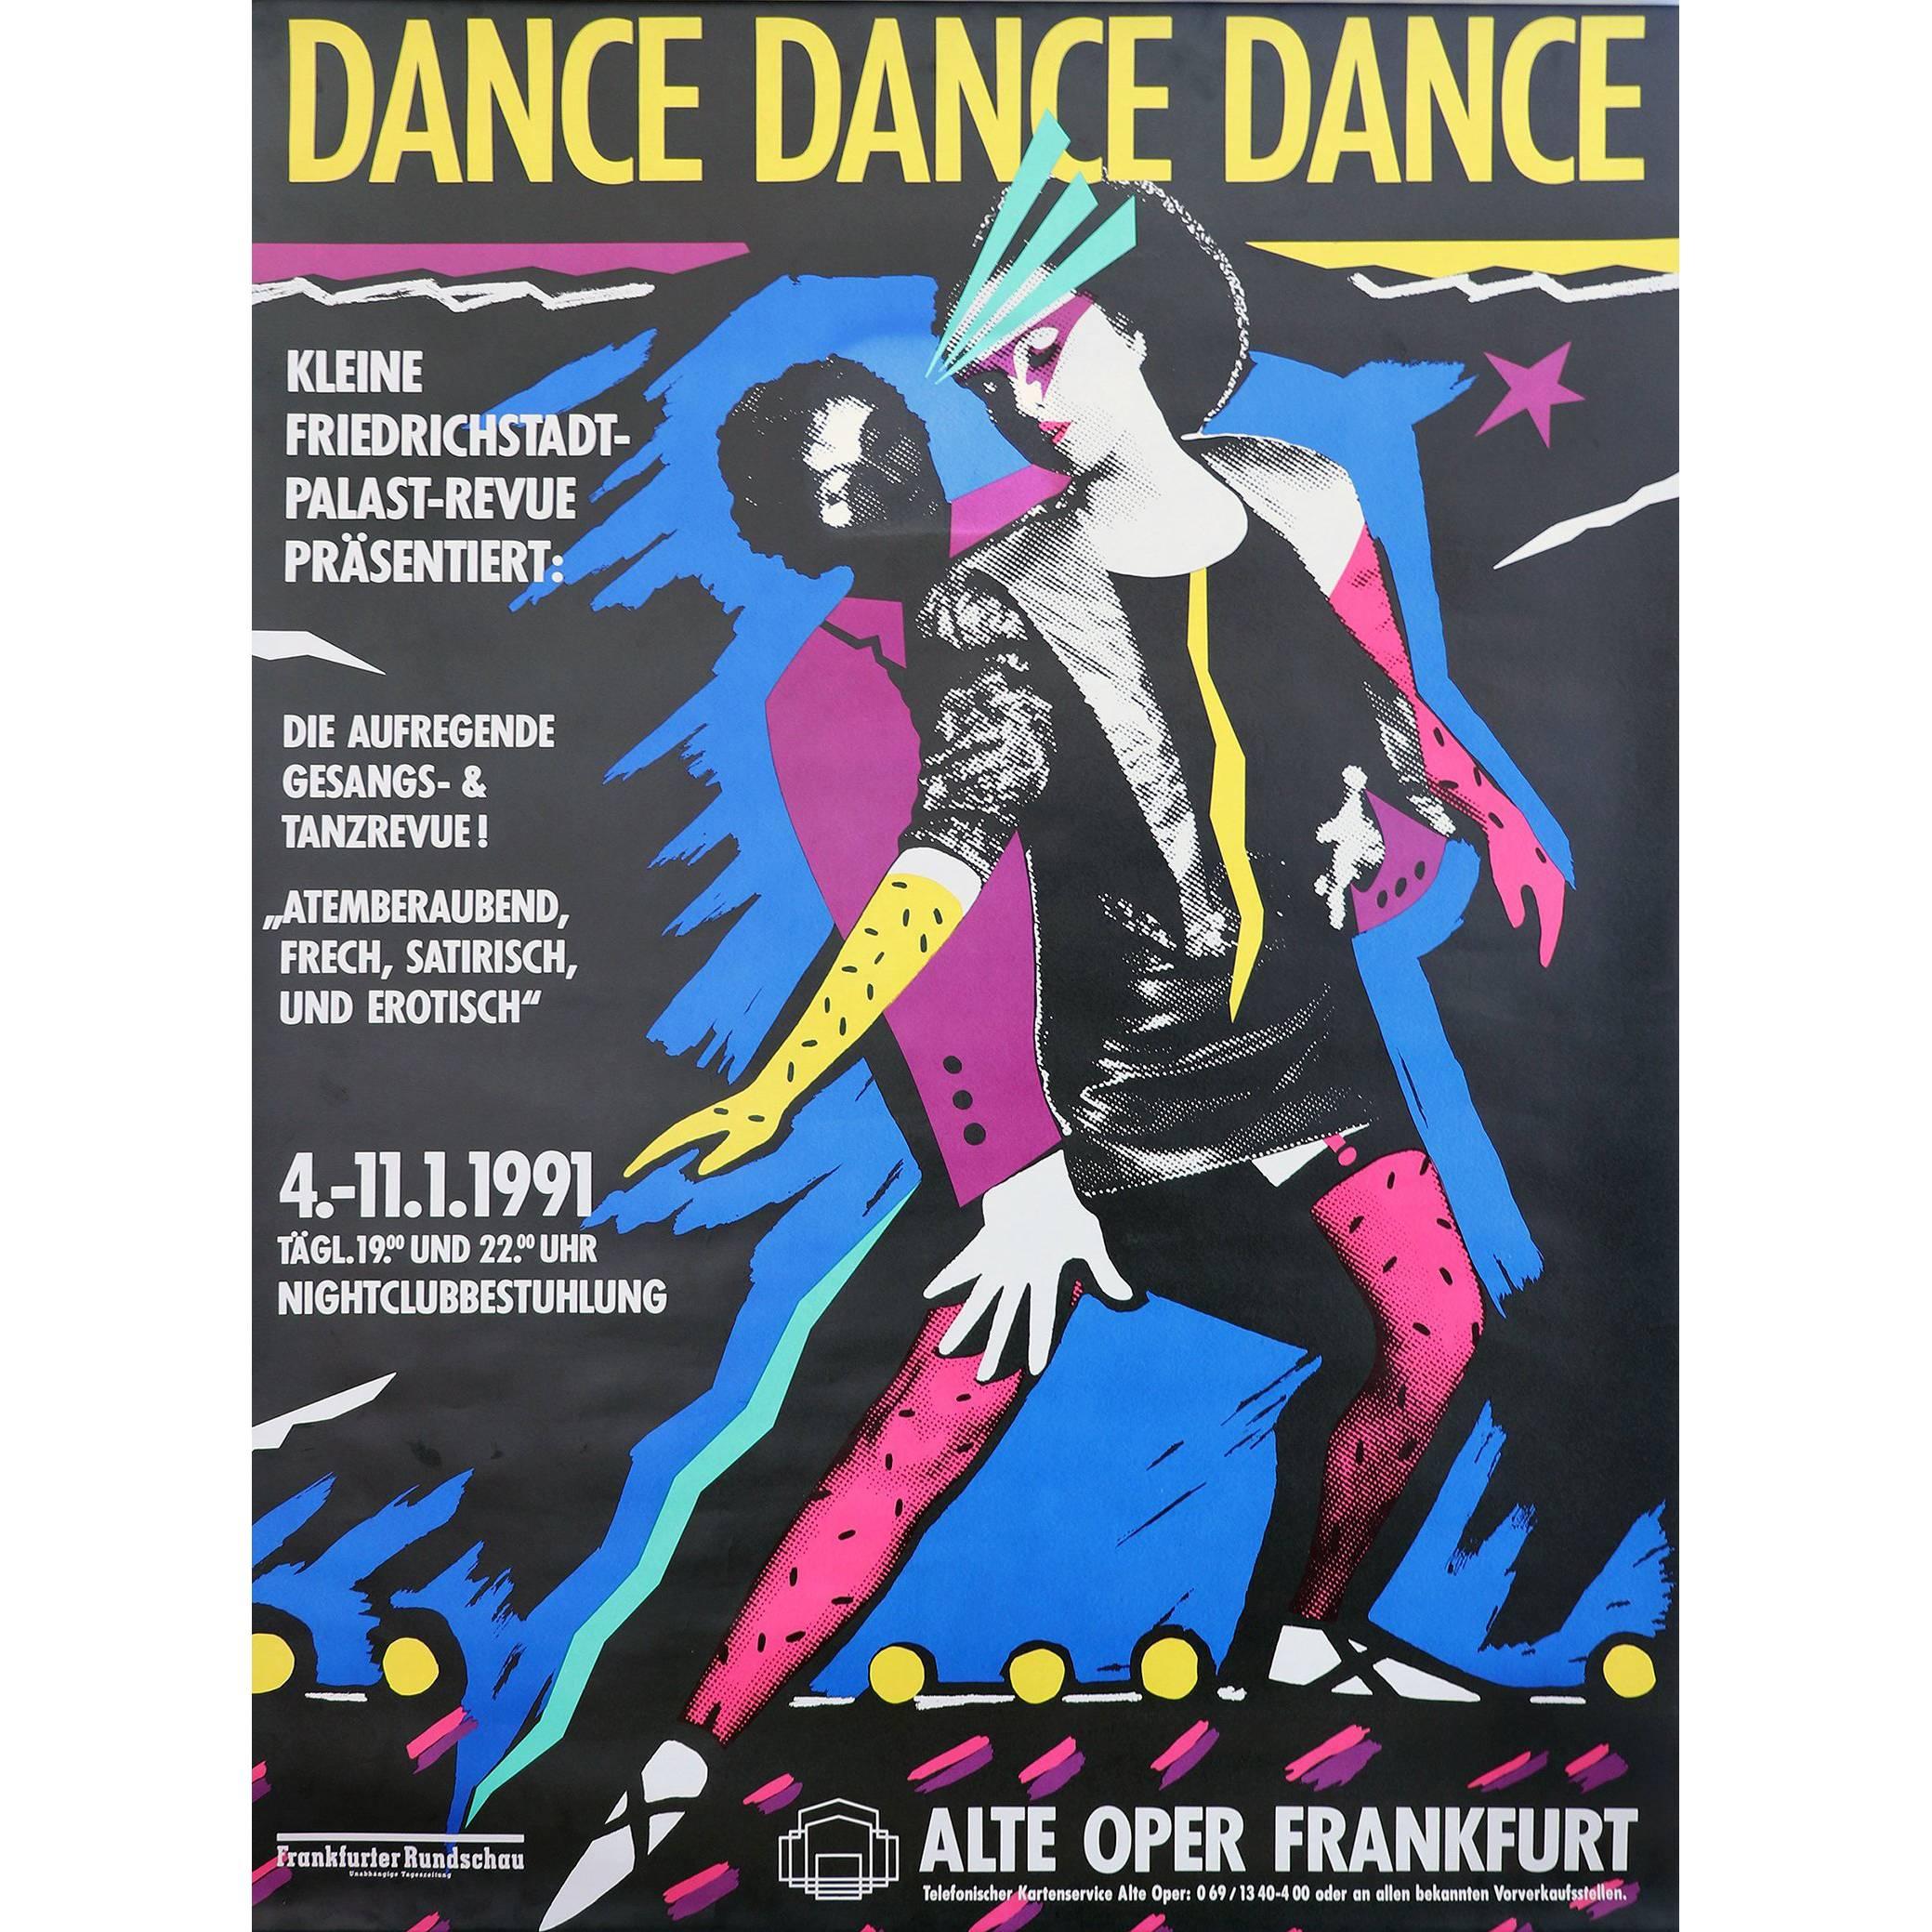 ""Dance Dance Dance"" Deutsches Plakat, 1991